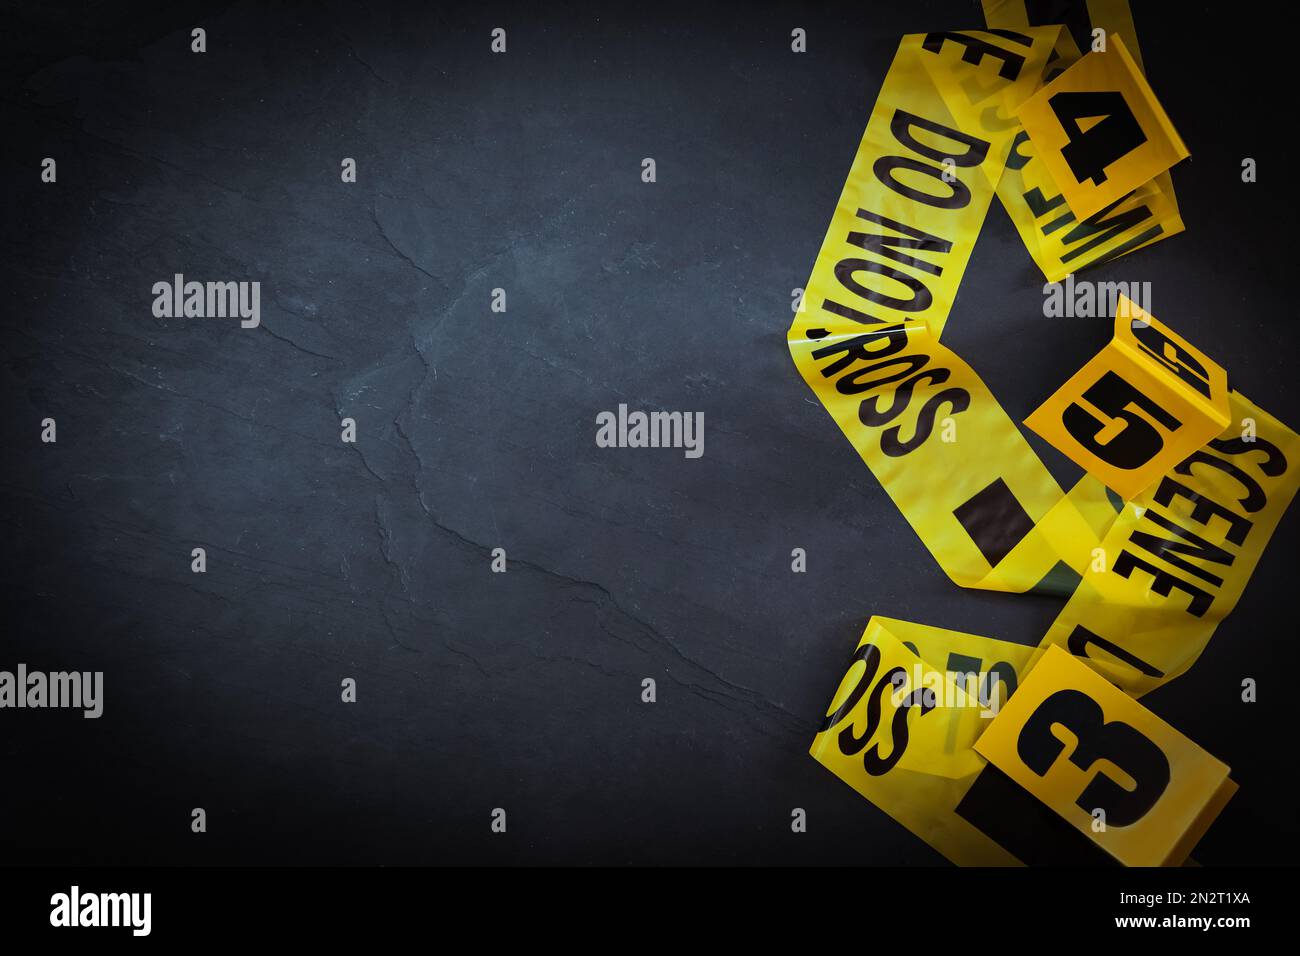 Nastro della scena del crimine e marcatori di prova su sfondo nero ardesia, piatto. Spazio per il testo Foto Stock